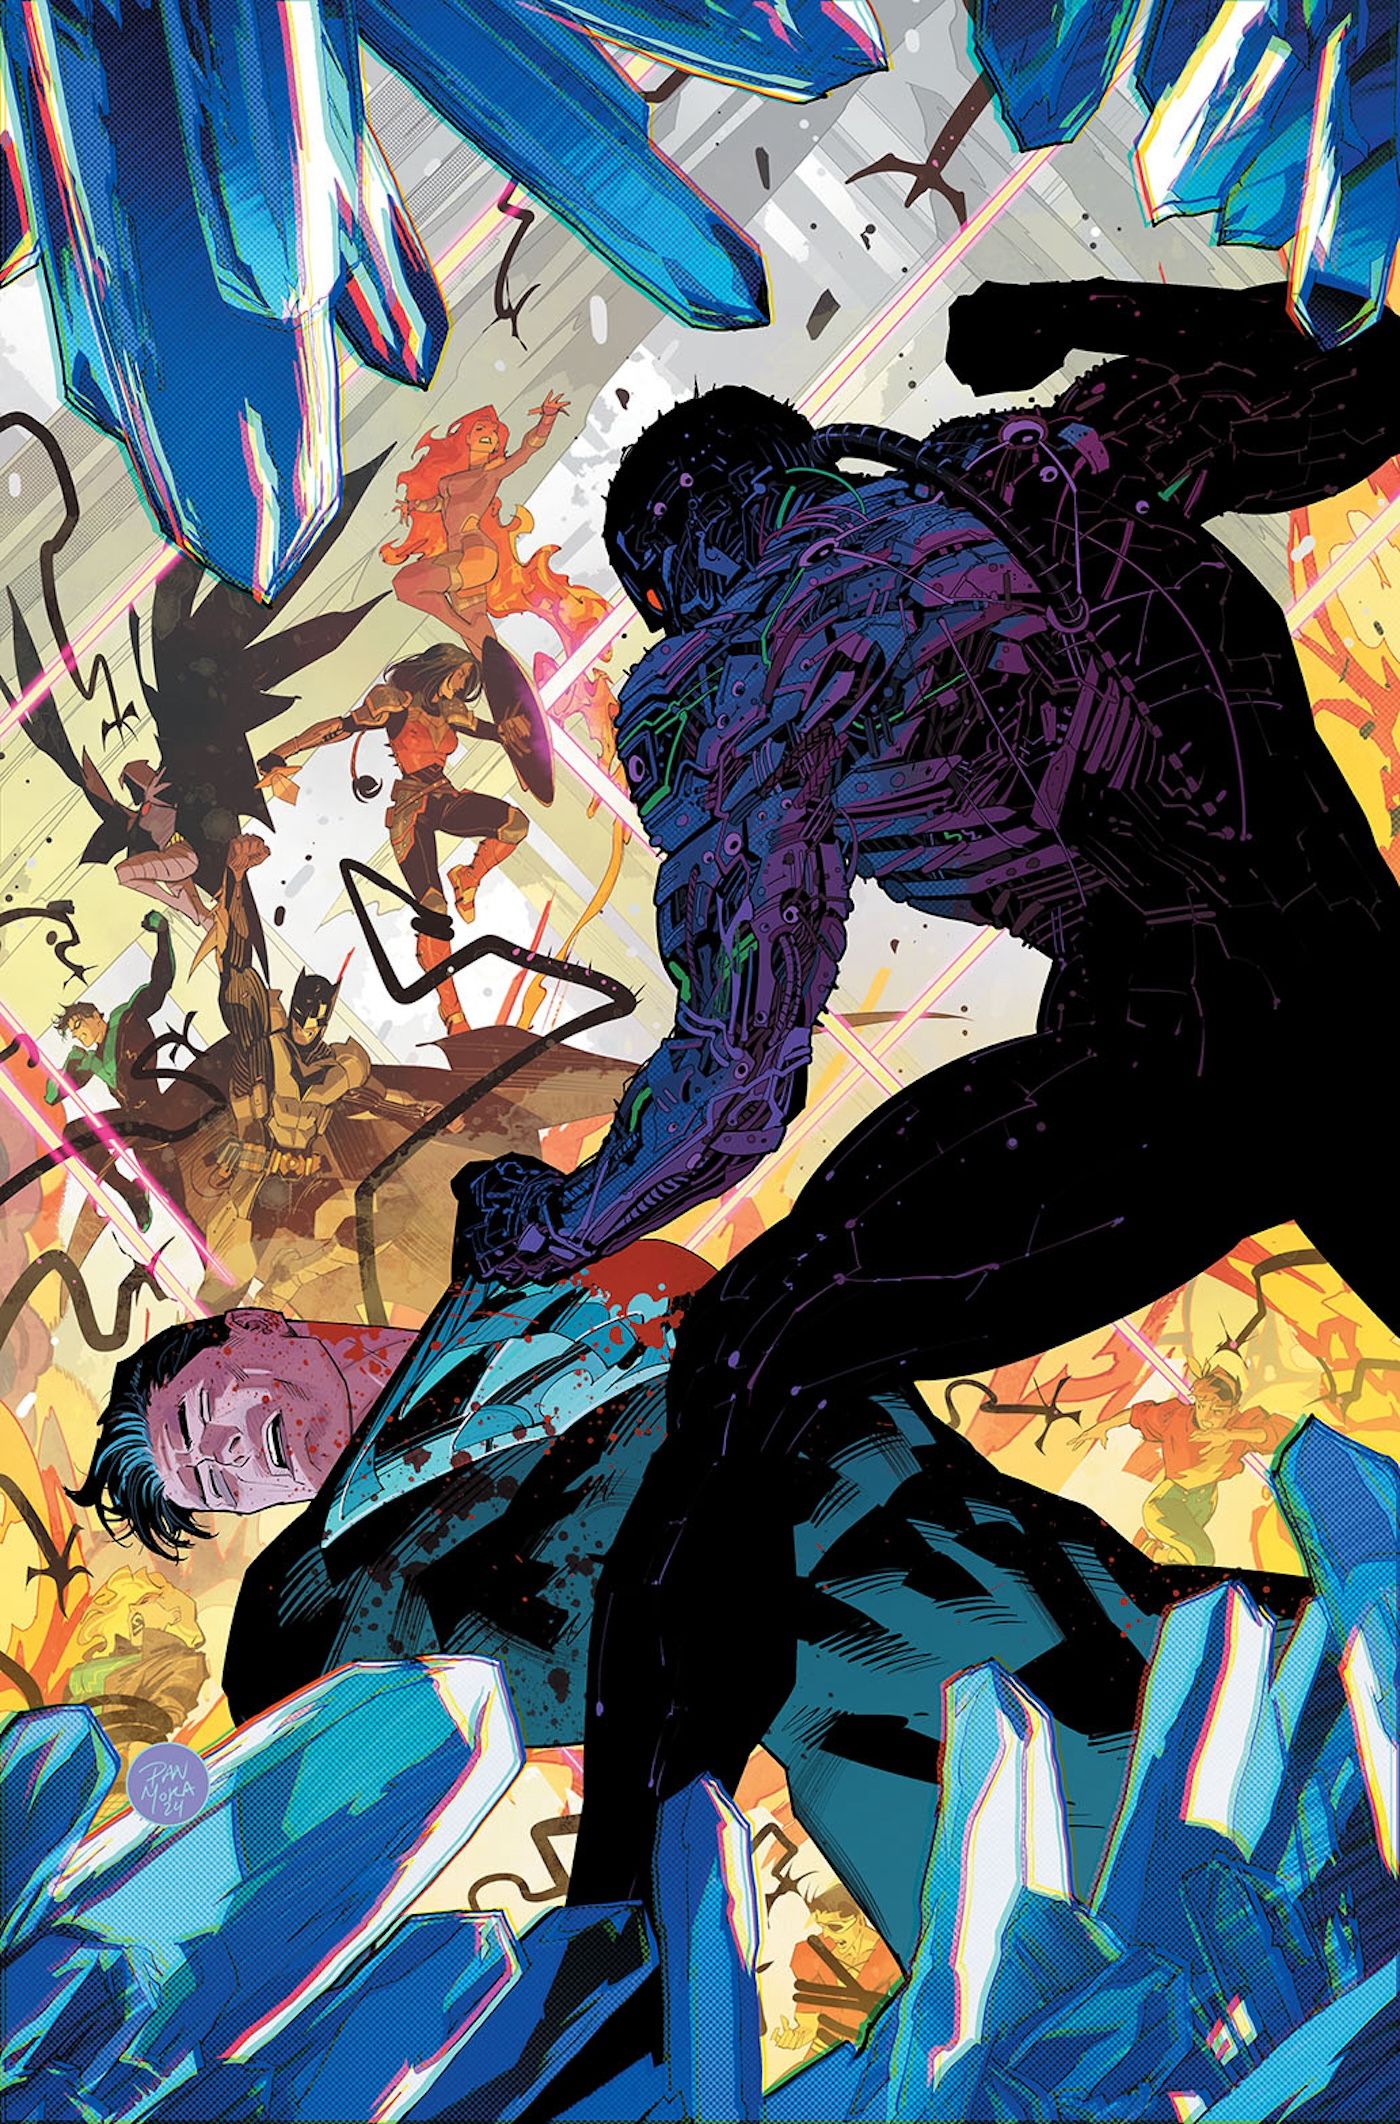 Solicitações da capa principal de Absolute Power 2: Superman sendo espancado com a Liga da Justiça ao fundo.